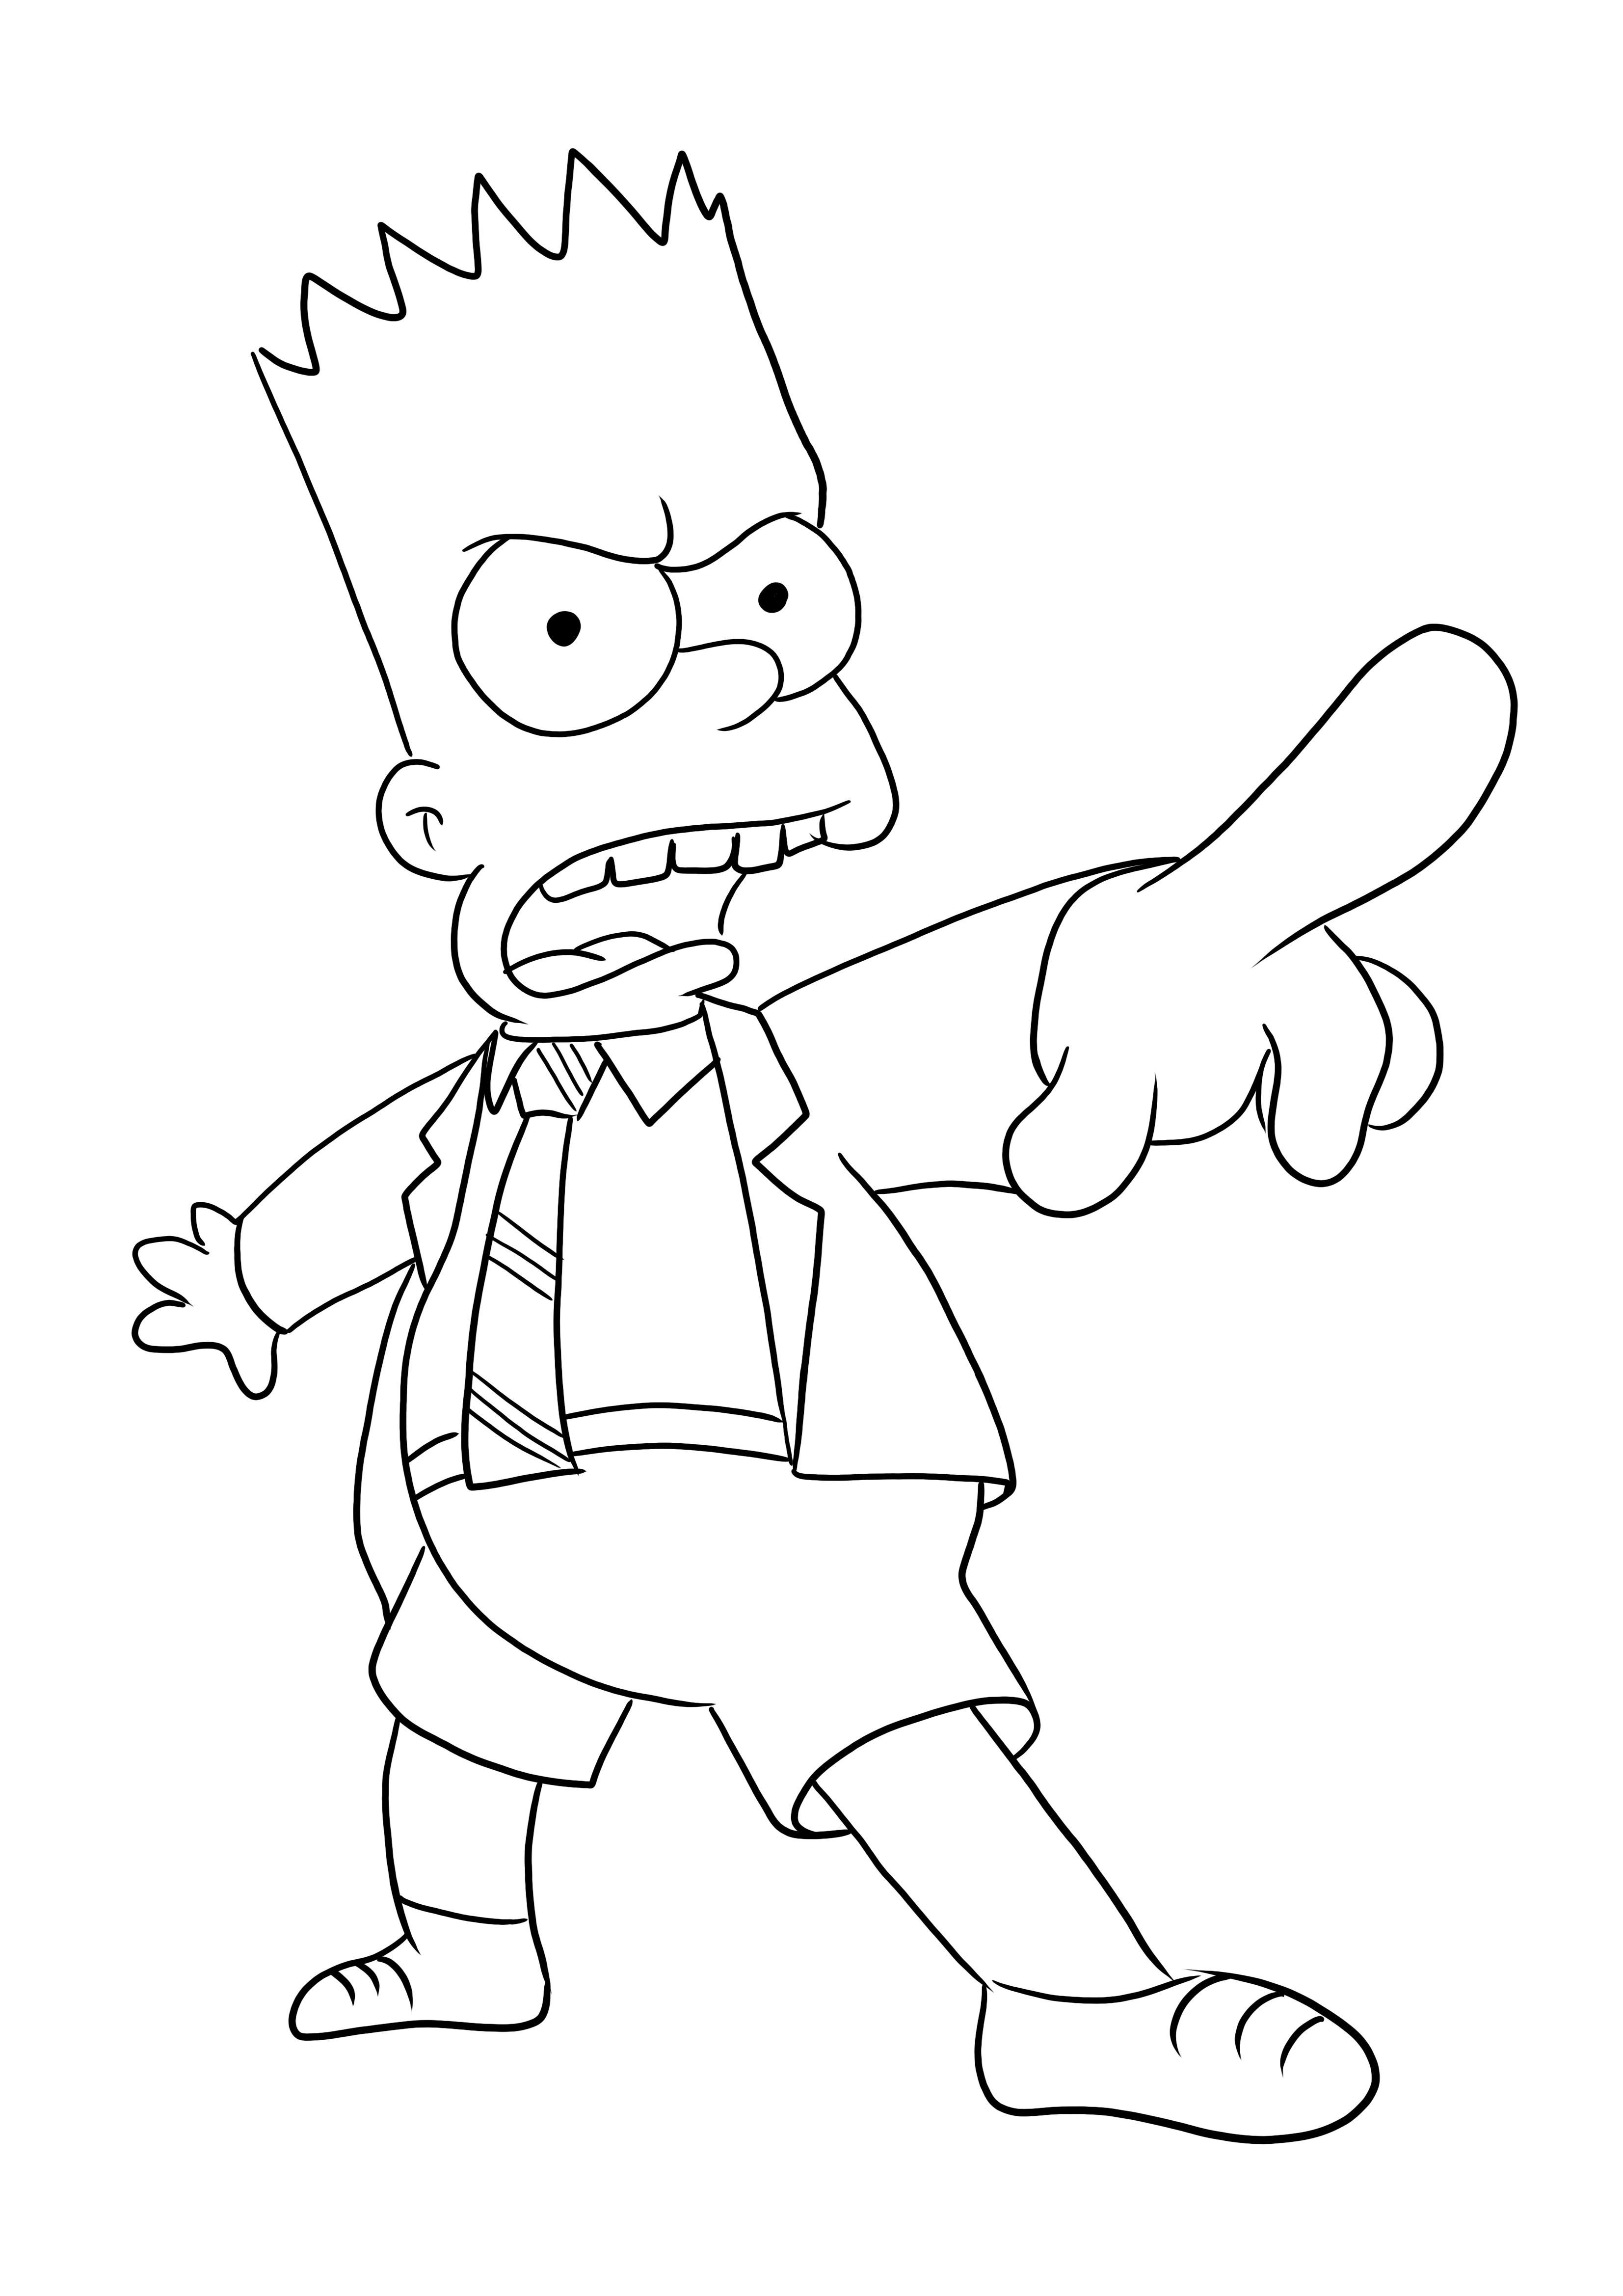 Oto bardzo łatwy do pokolorowania wściekły Bart do pobrania lub wydrukowania